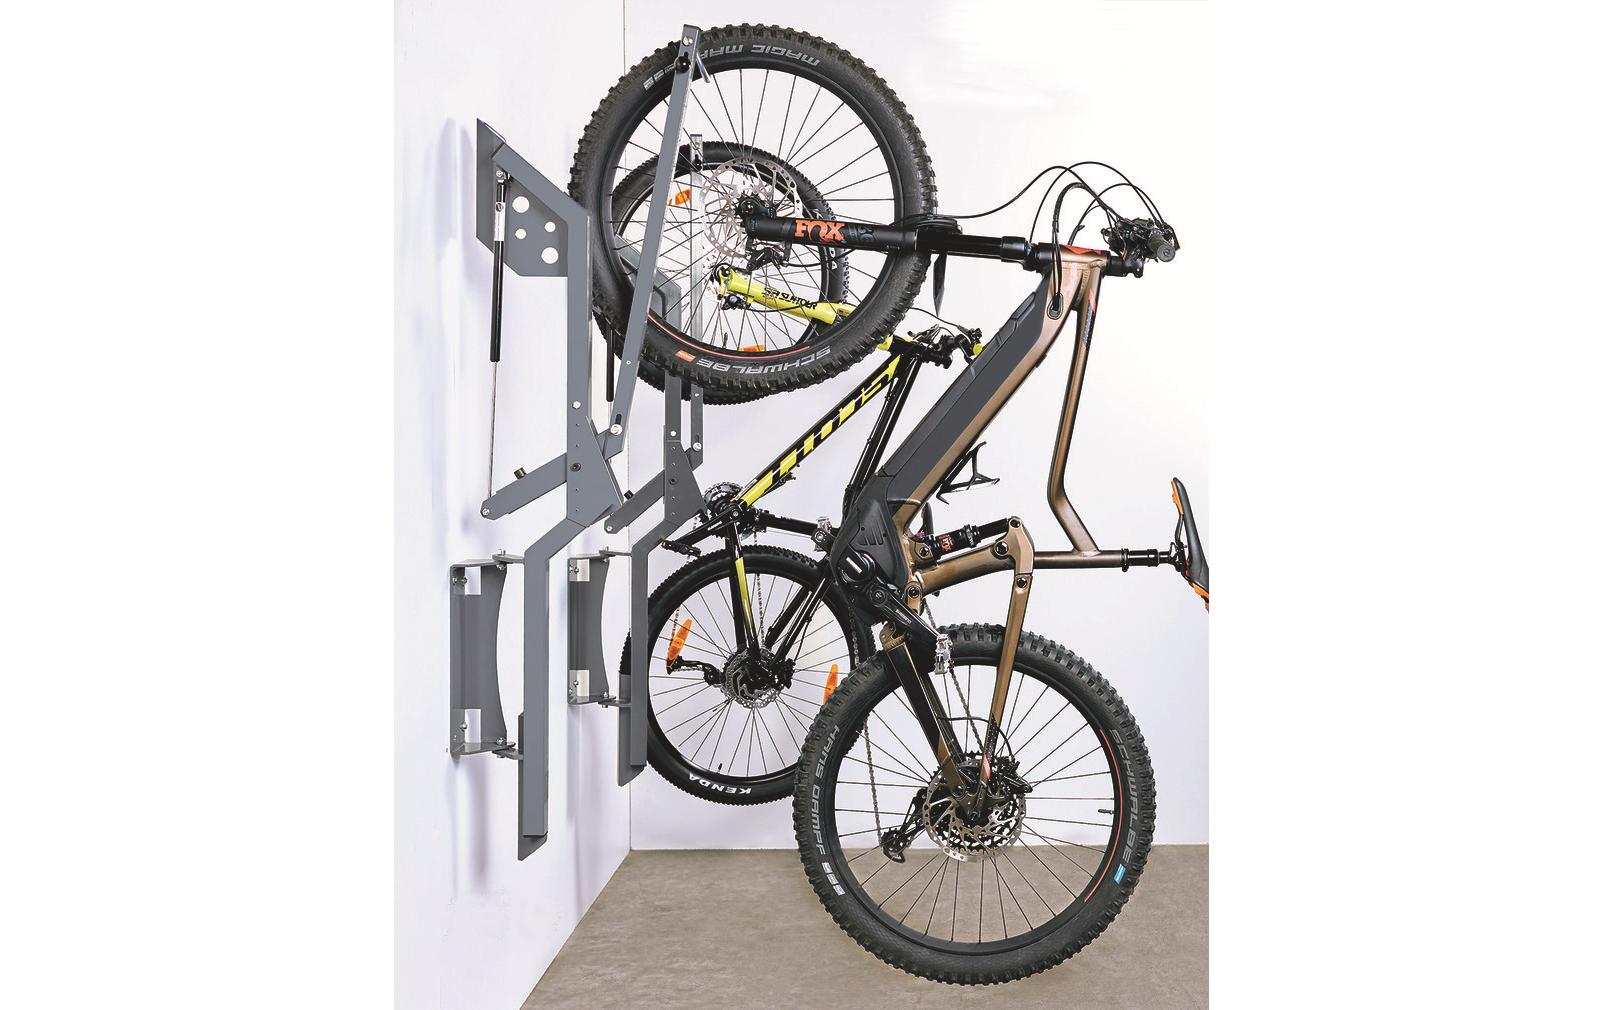 OK-LINE Veloständer Bike Lift für 10-20 kg